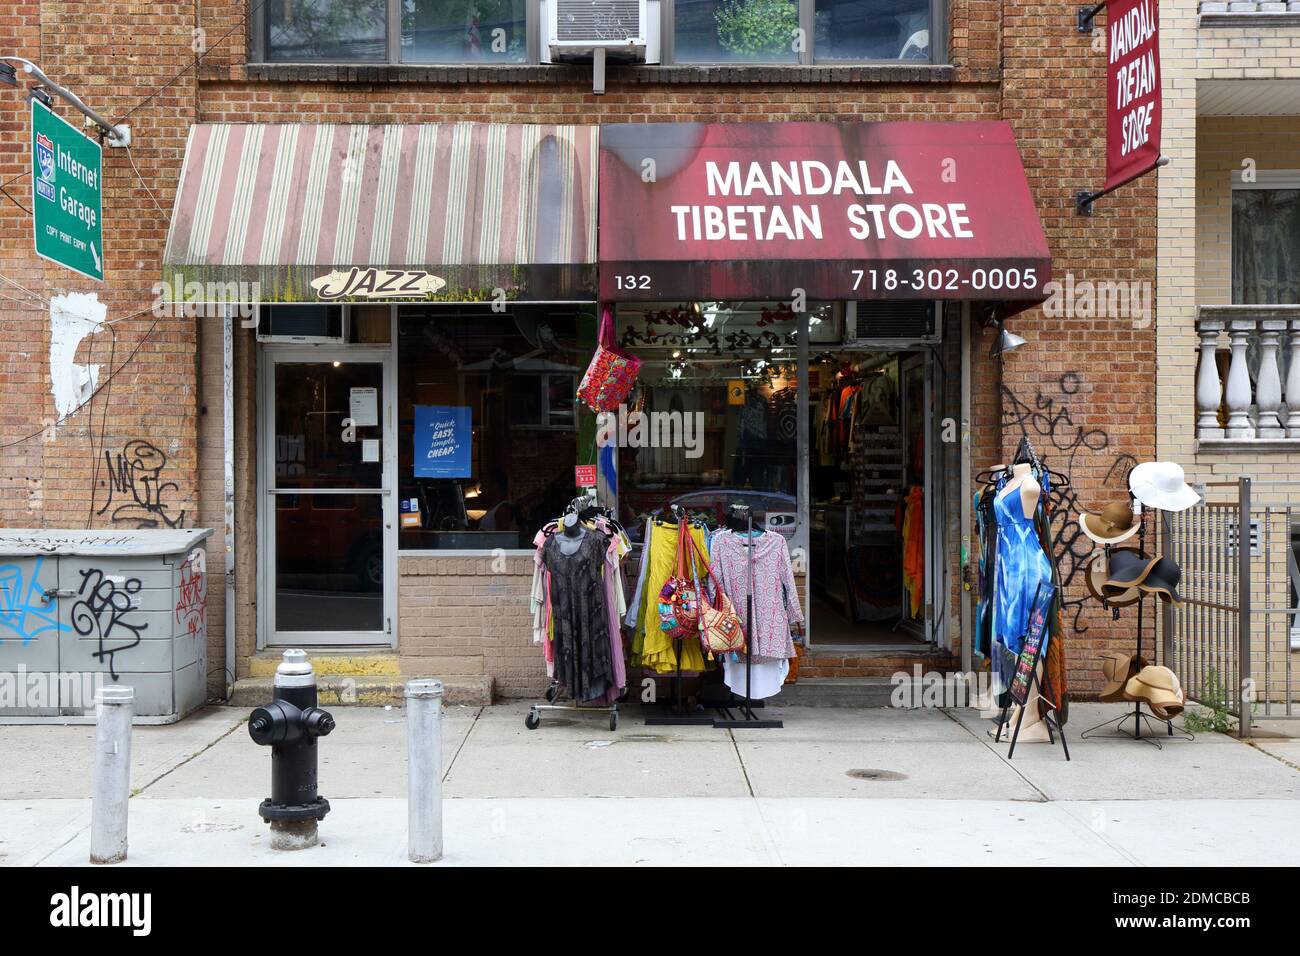 Mandala Tibetan Store, Jazz, 132 N 5th St, Brooklyn, NY. Façade extérieure d'une boutique de cadeaux et de vêtements dans le quartier de Williamsburg. Banque D'Images